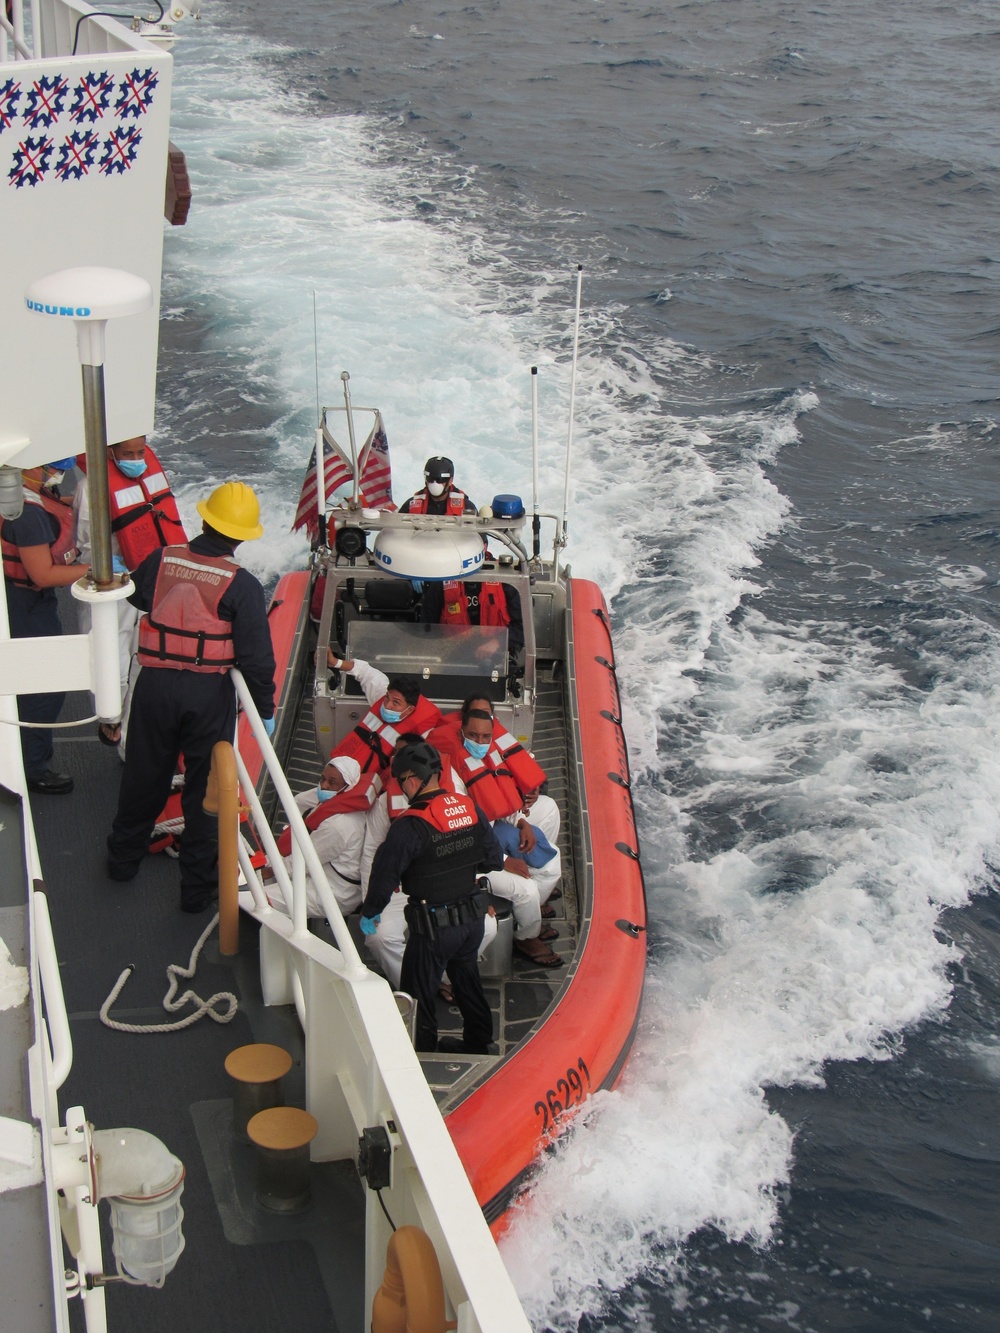 Coast Guard repatriates 20 migrants to the Dominican Republic following at-sea interdiction near Rincon, Puerto Rico